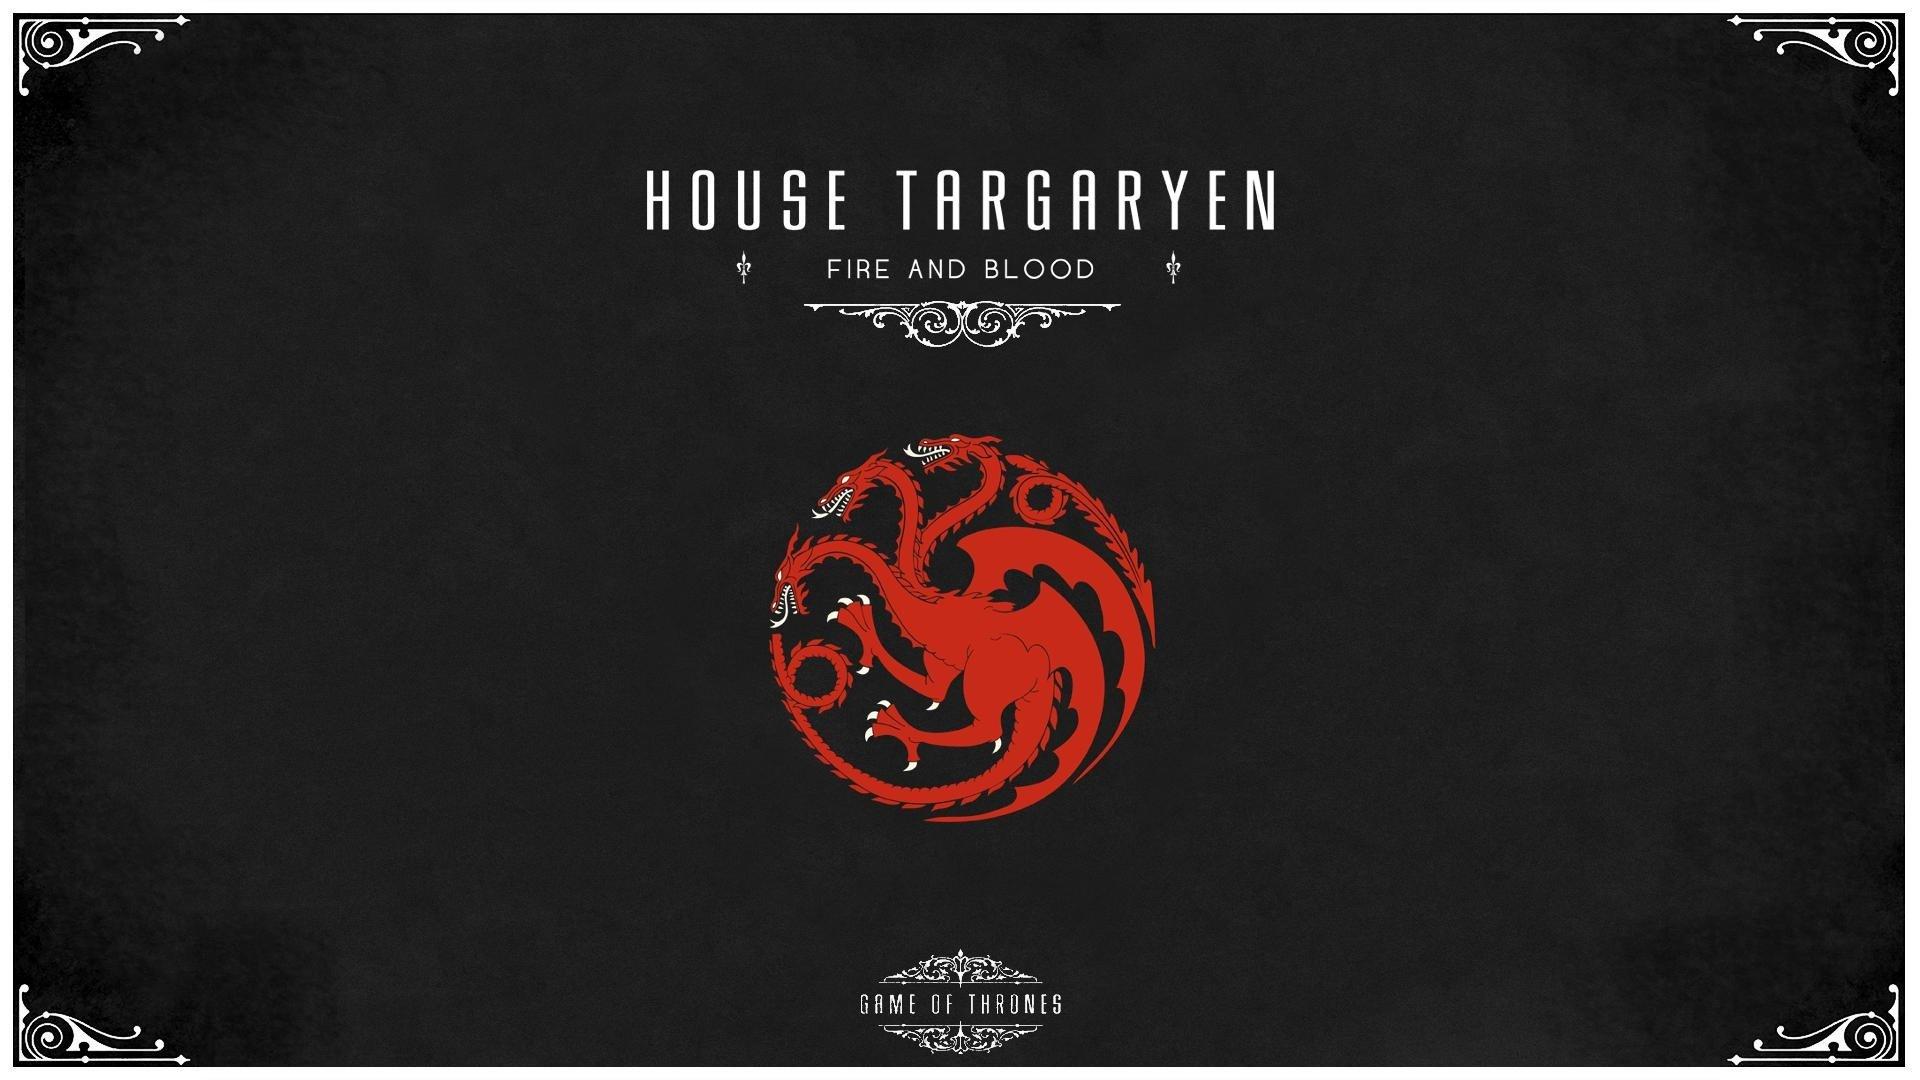 Game of Thrones House Targaryen free desktop background